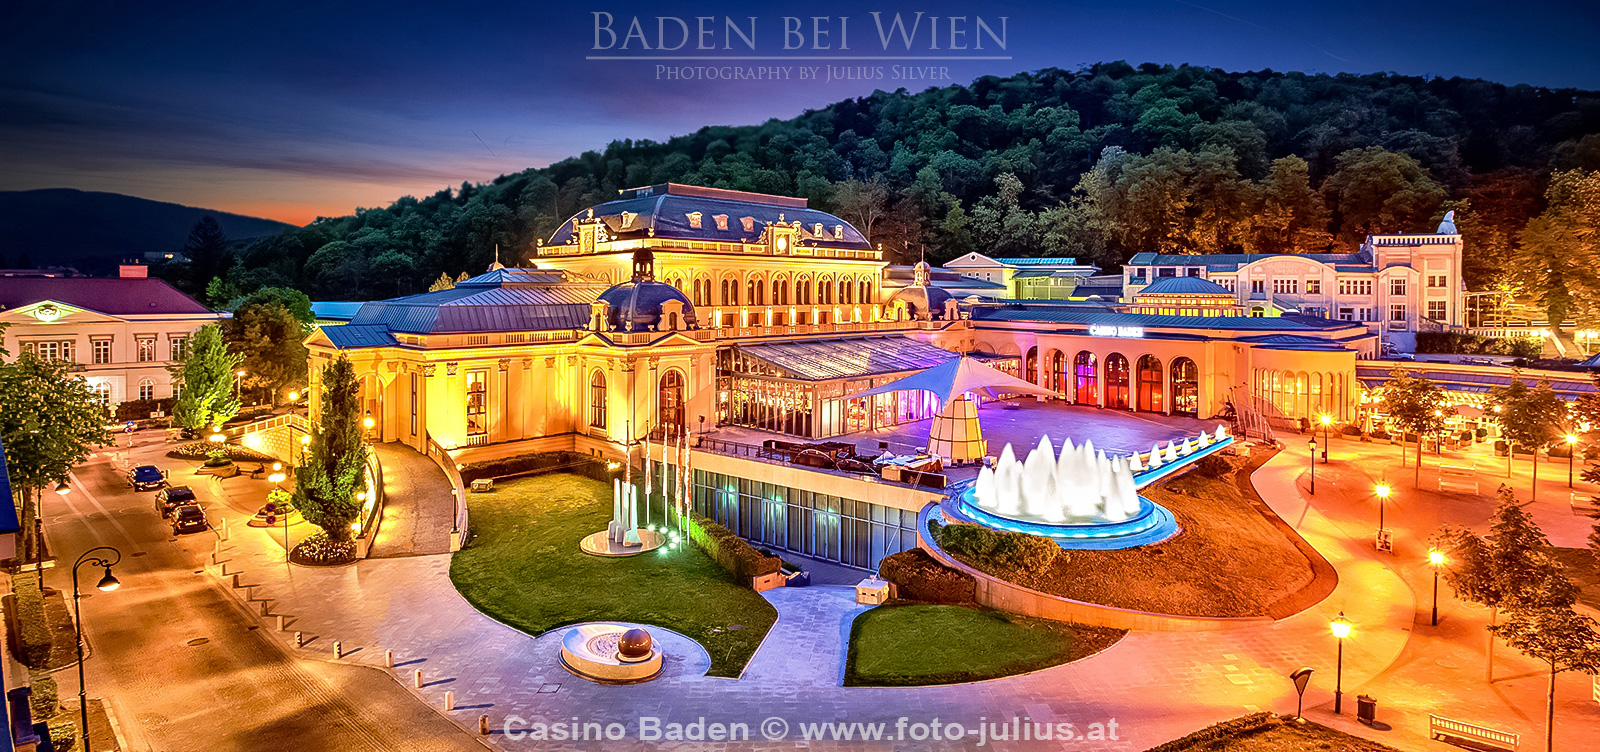 baden090a_Casino_Baden.jpg, 794kB